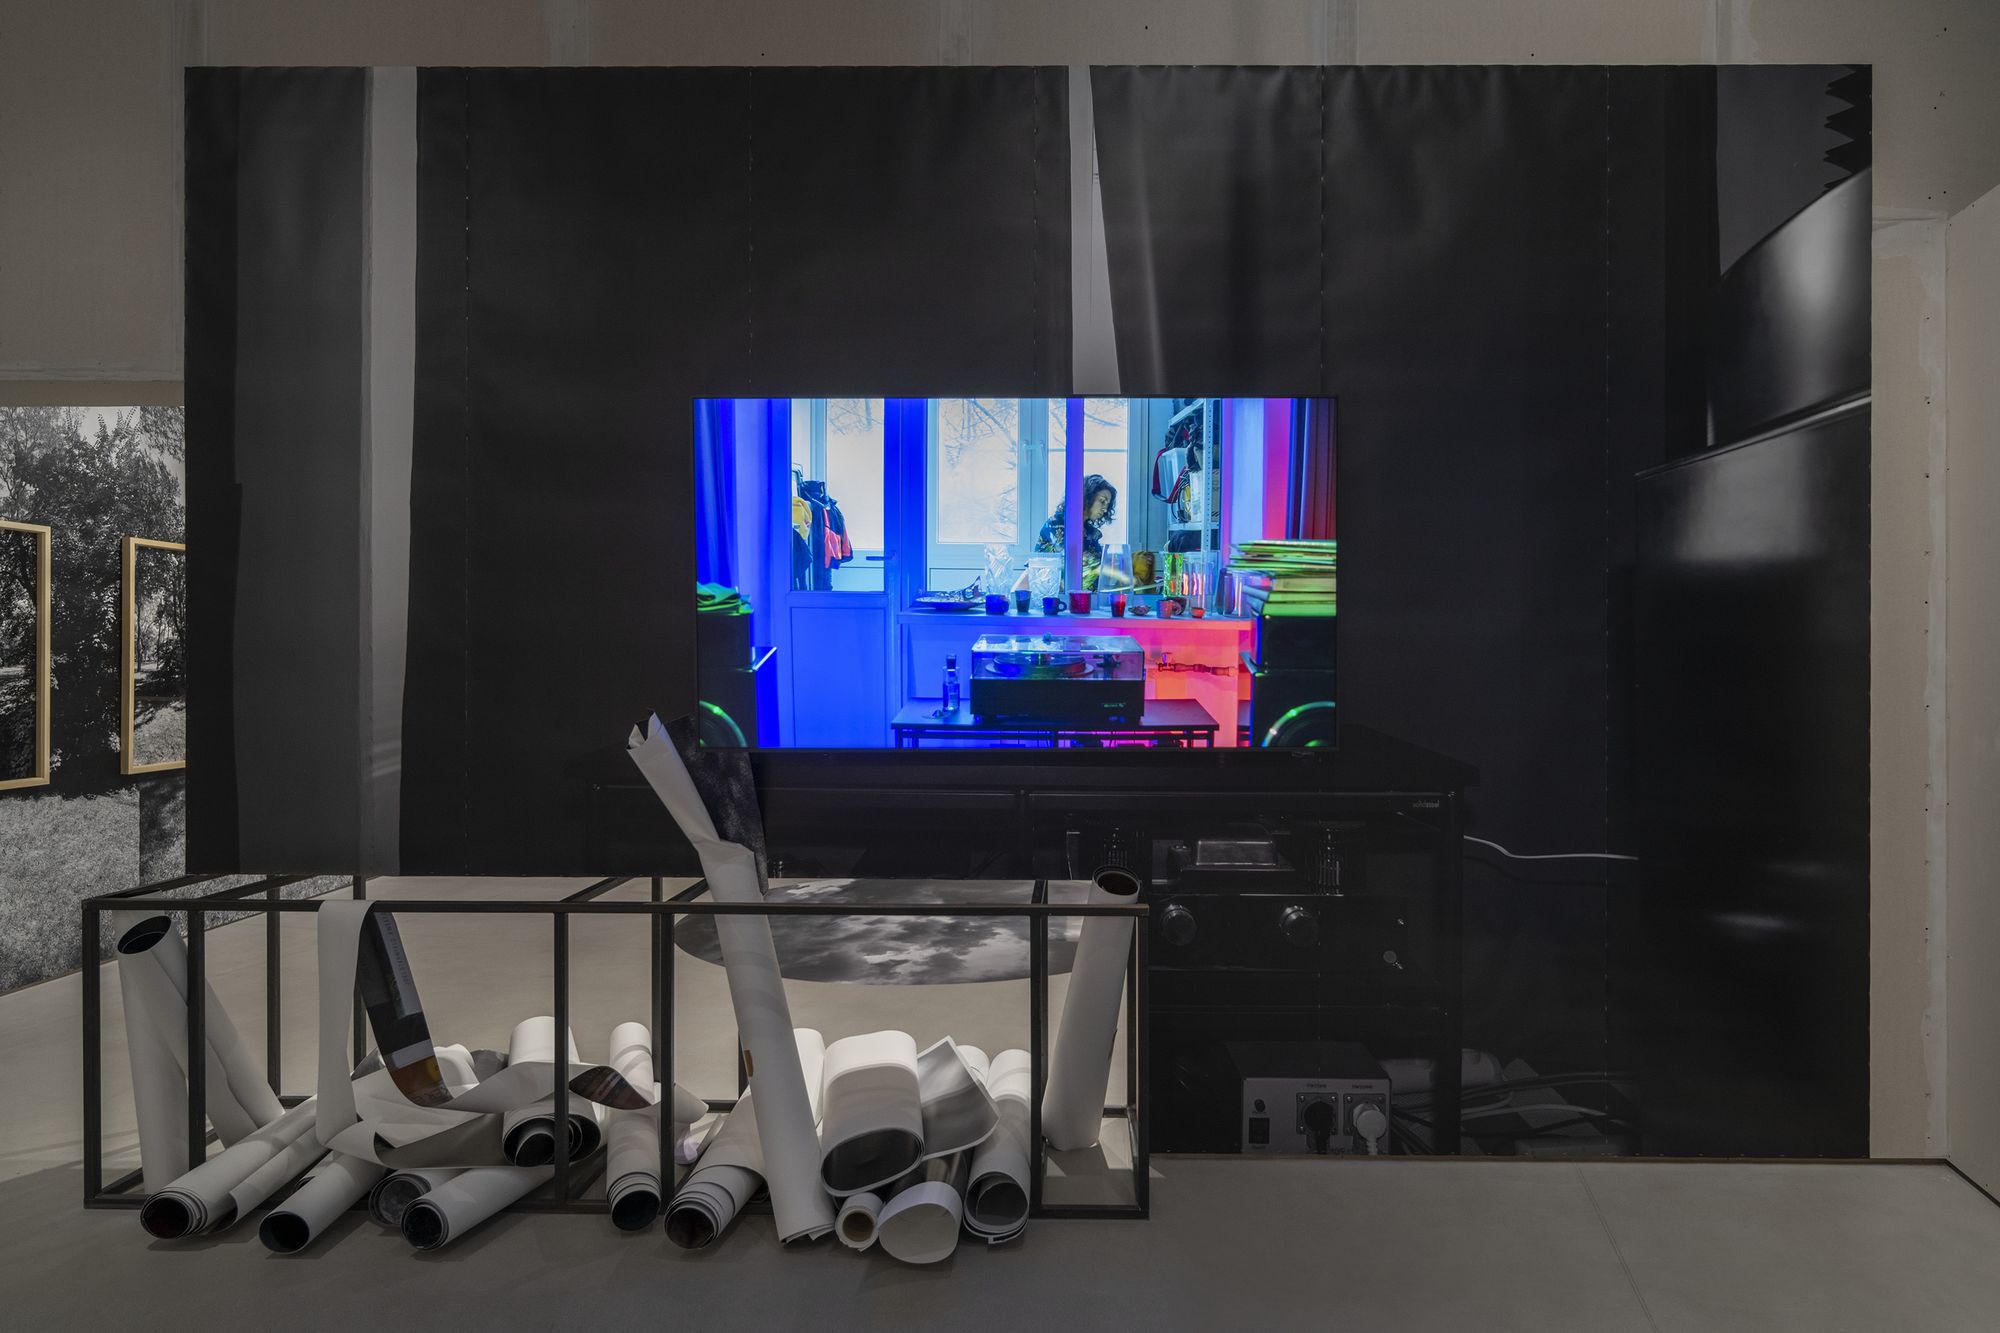 Экспонат, телевизор с видеоартом, снизу лежат большие рулоны бумаги